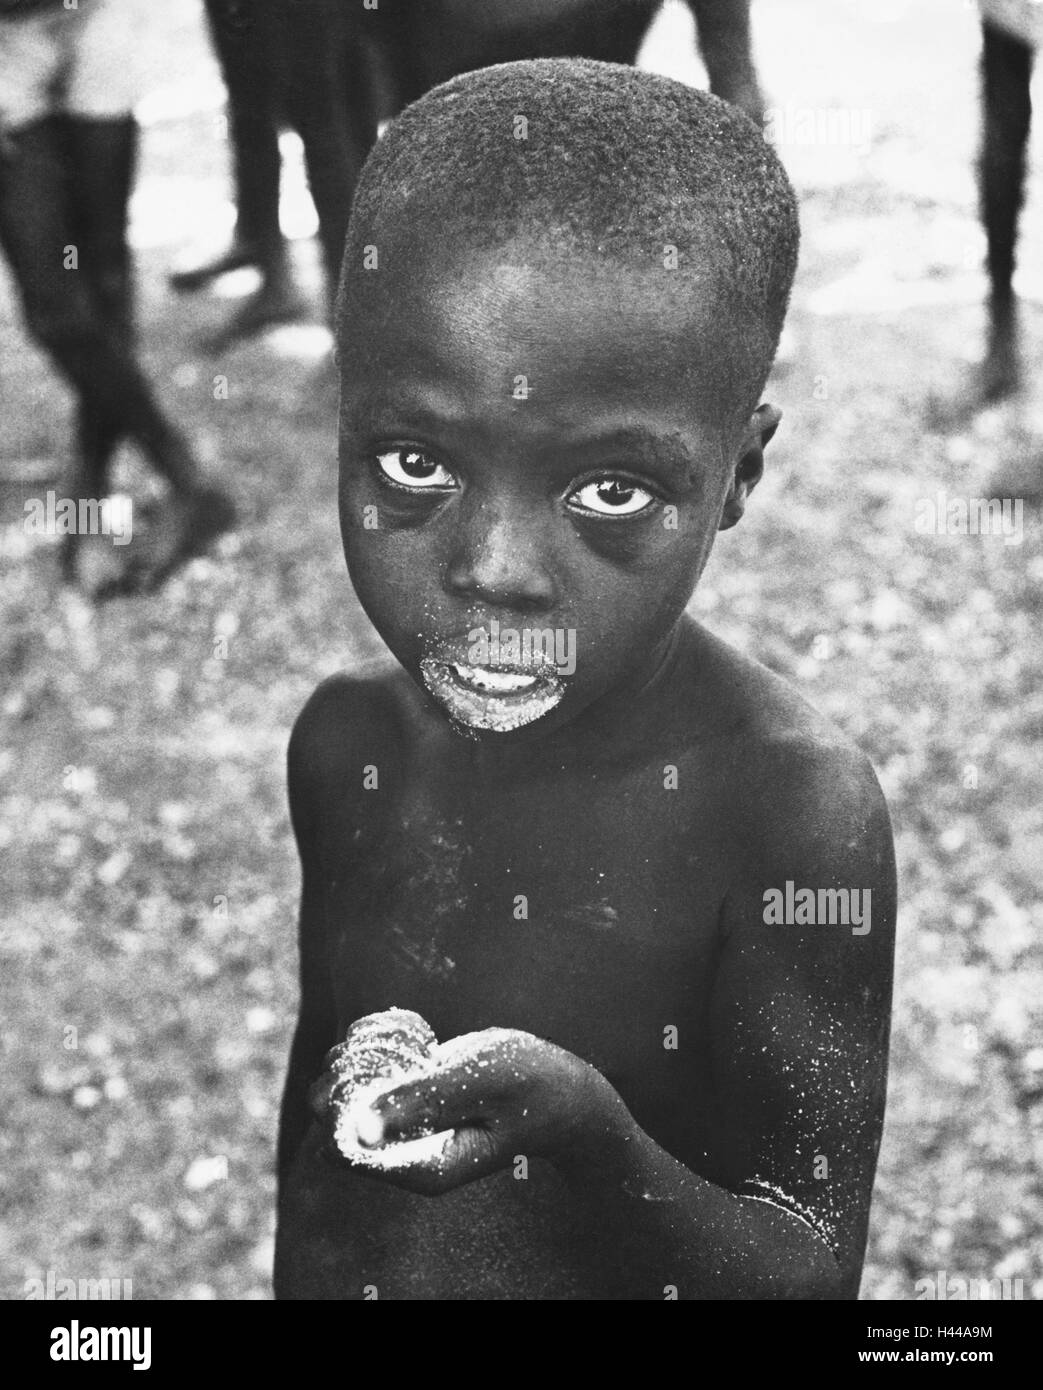 Dahomey, 1962, bambino, farina, cibo, ritratto, Africa occidentale, Africa, Benin, persone con la pelle scura, Africana, colorata, africani, la miseria e la fame, povertà, fame, mancanza di cibo, malnutriti, vittime, impotenza, la carestia, la disperazione, esterno, Foto Stock